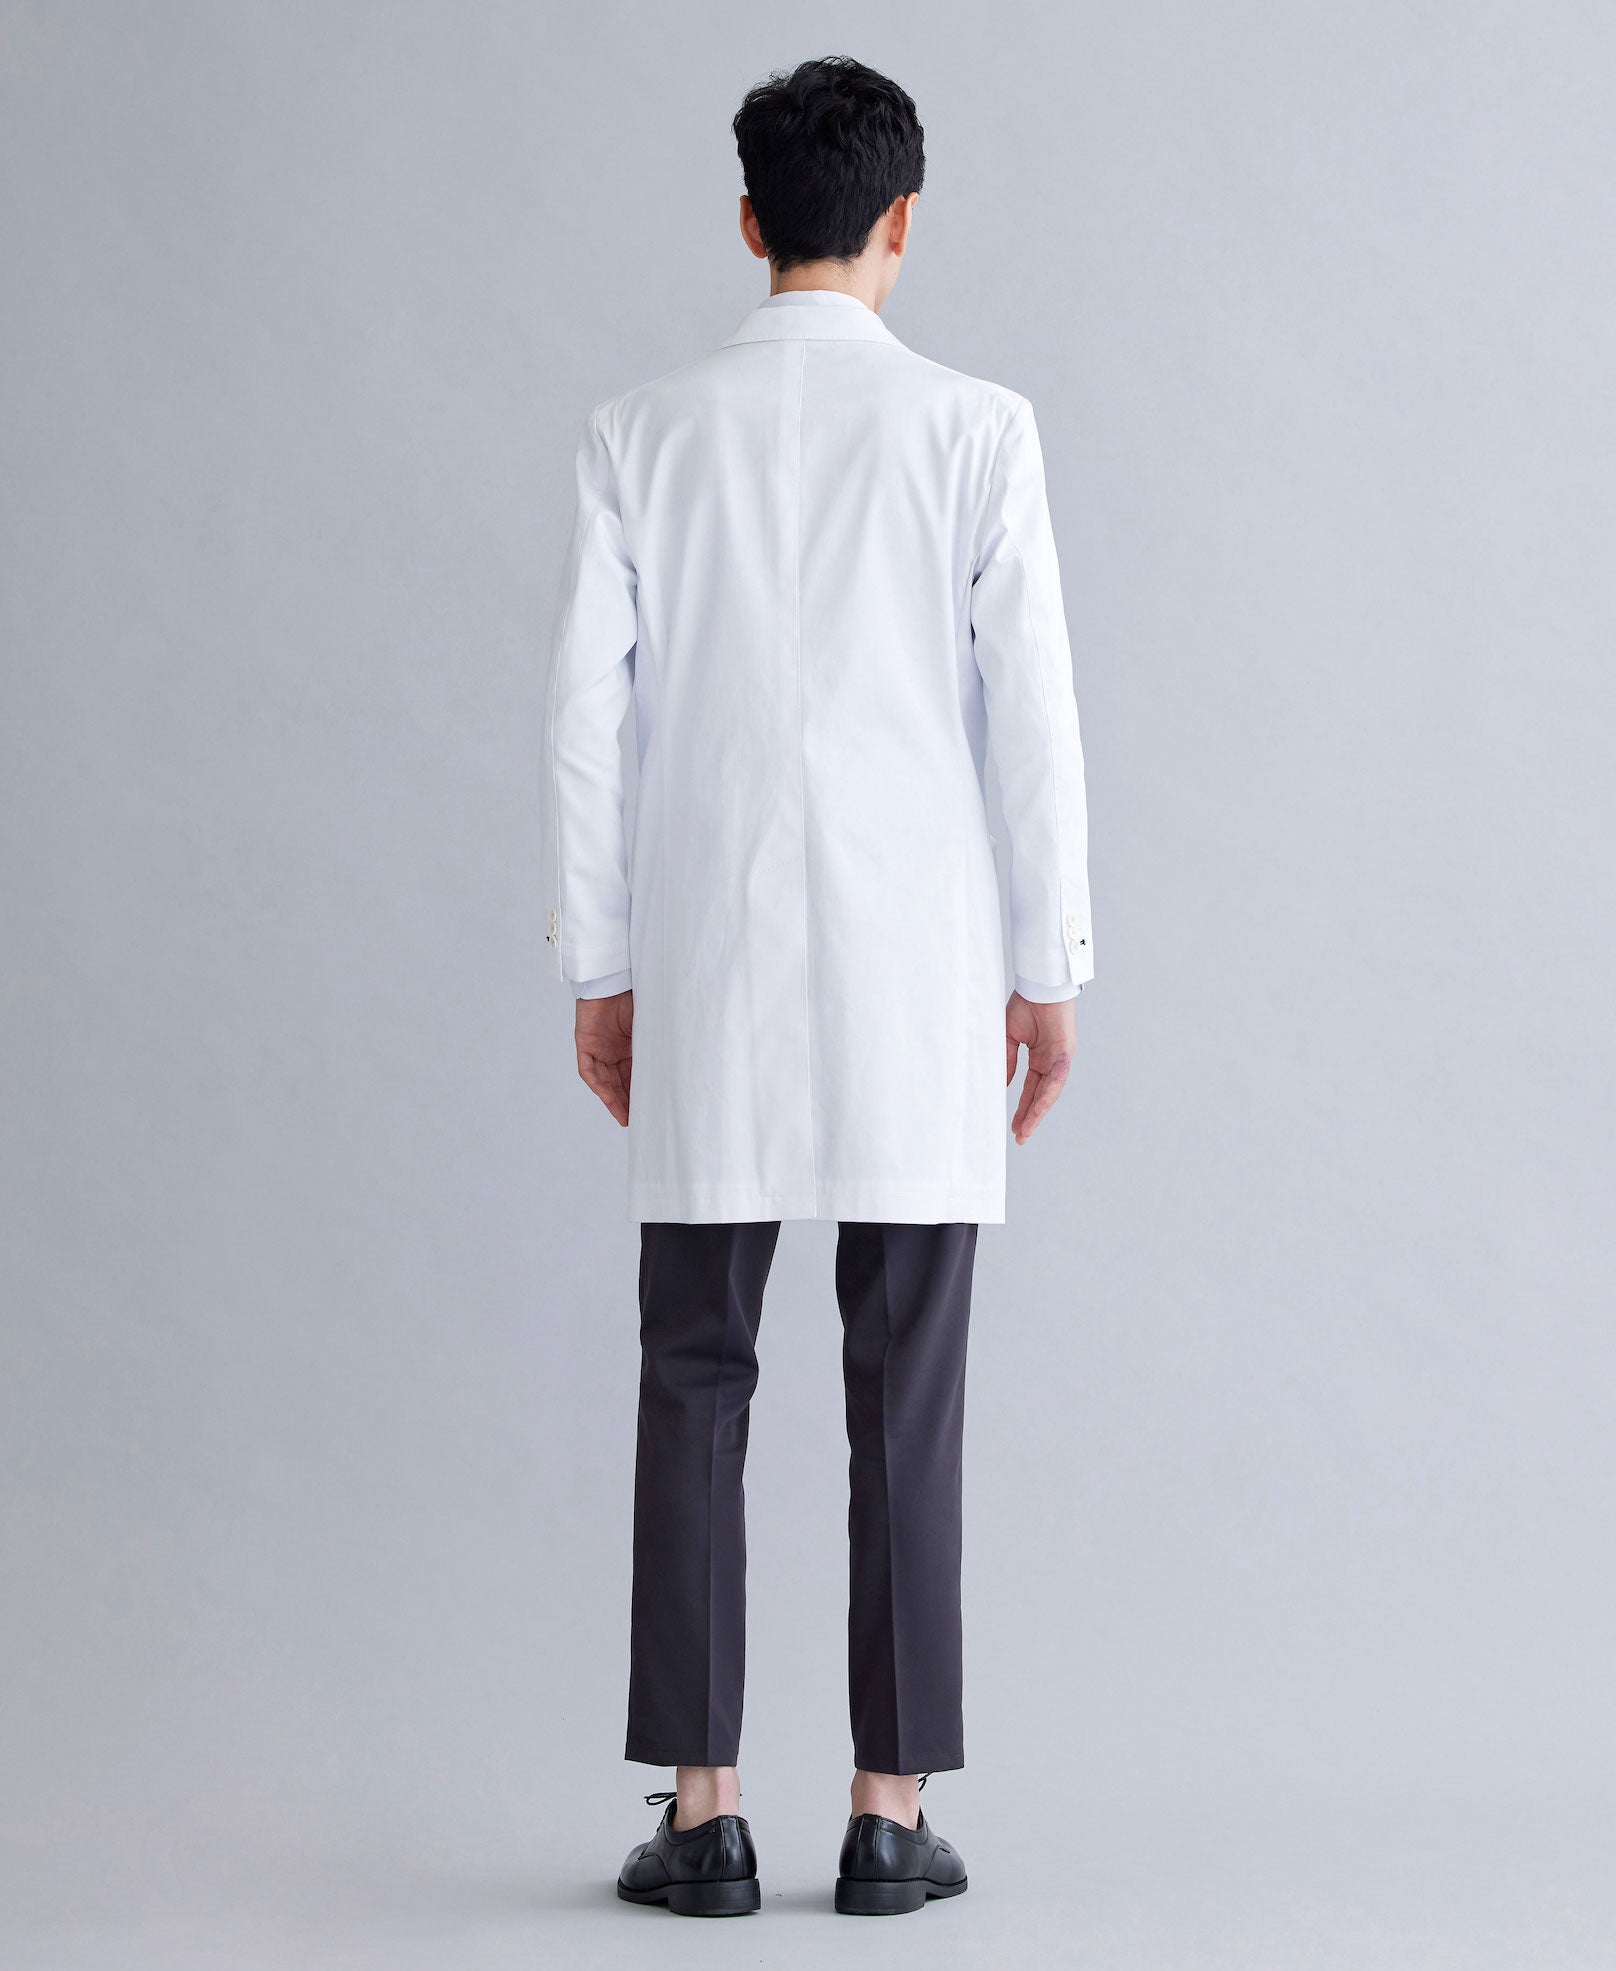 メンズ ベーシック ロングコート – 白衣・スクラブ・医療用メディカル 